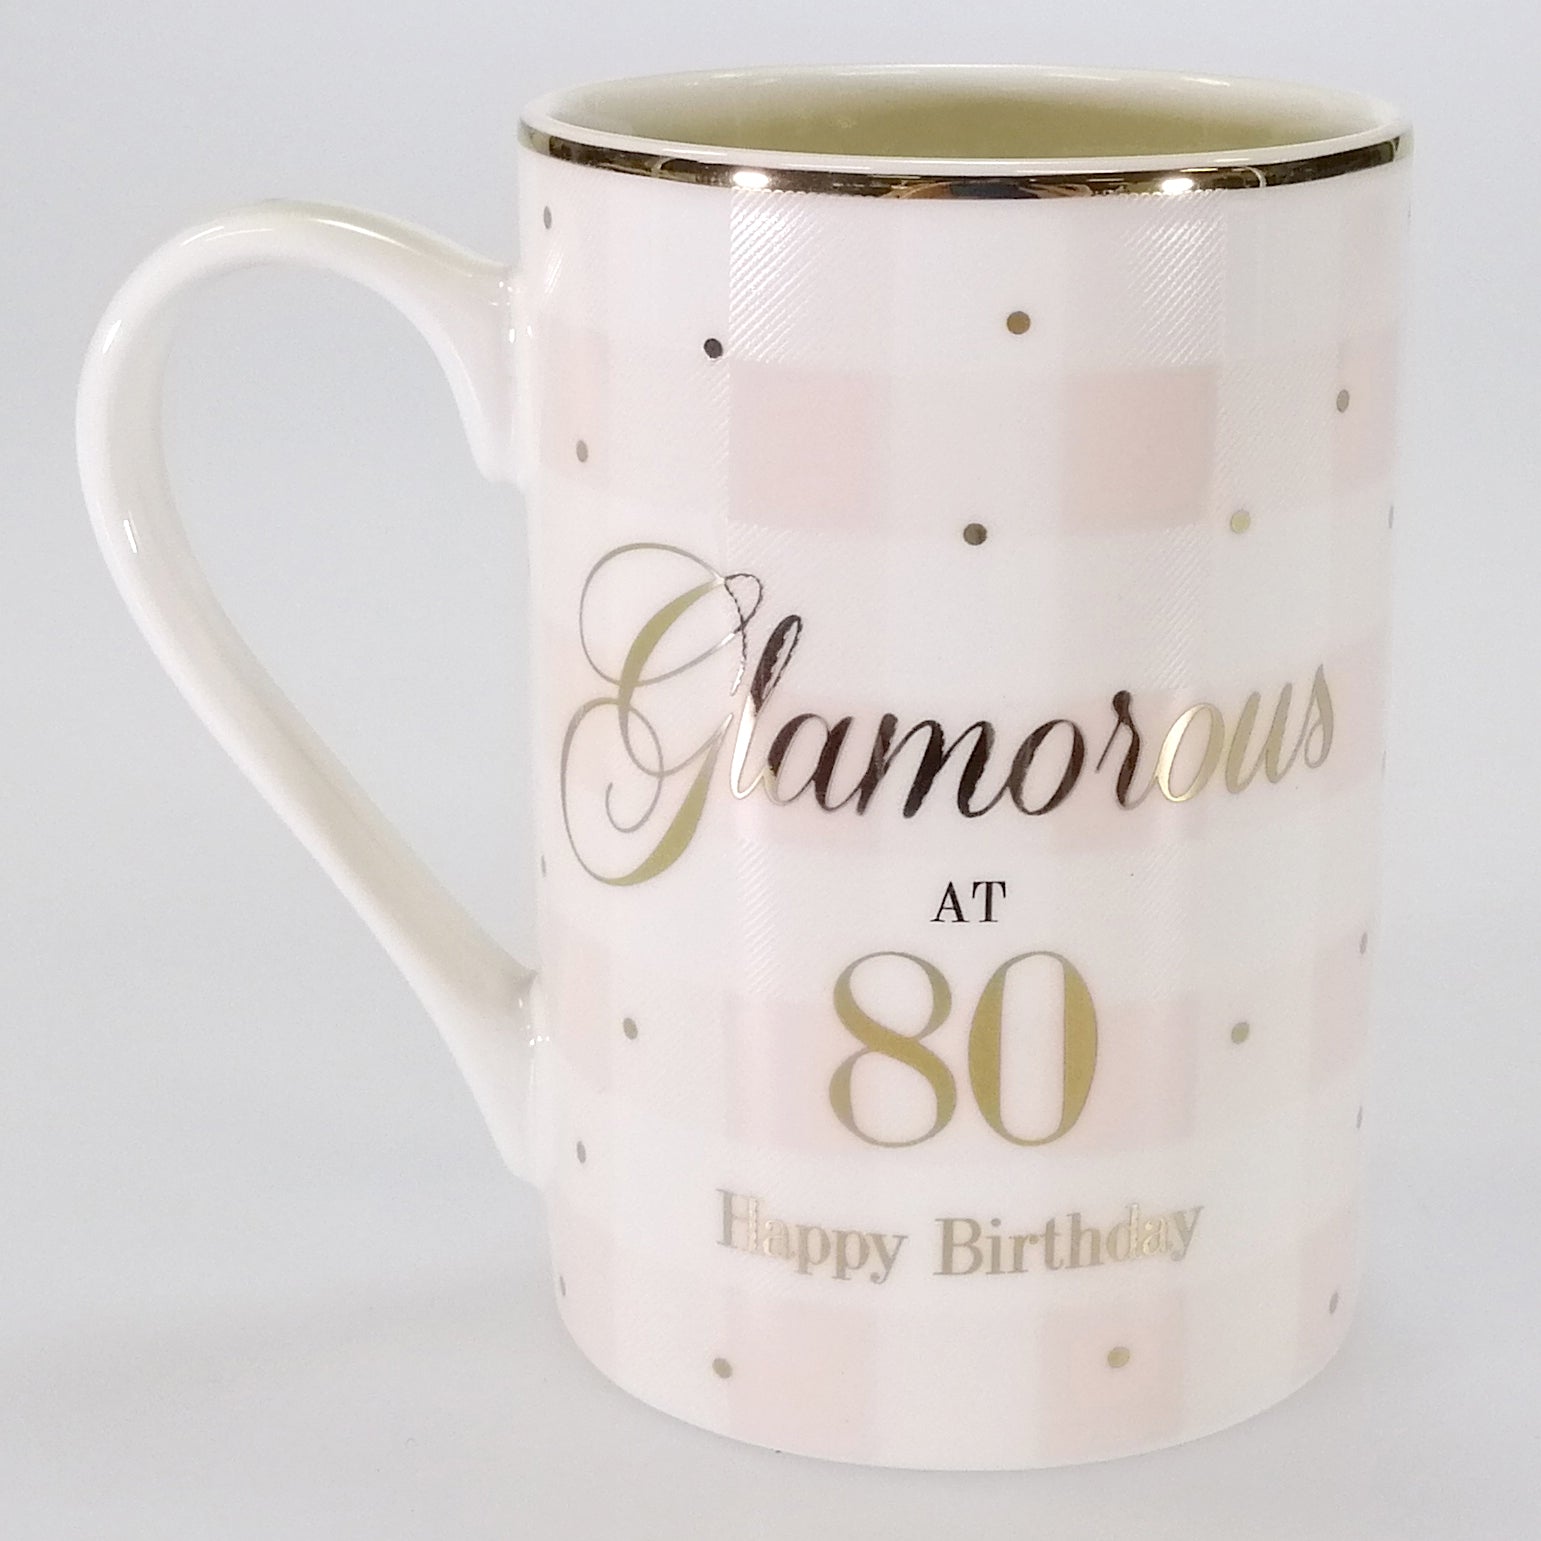 Glamorous at 80' birthdays Mug